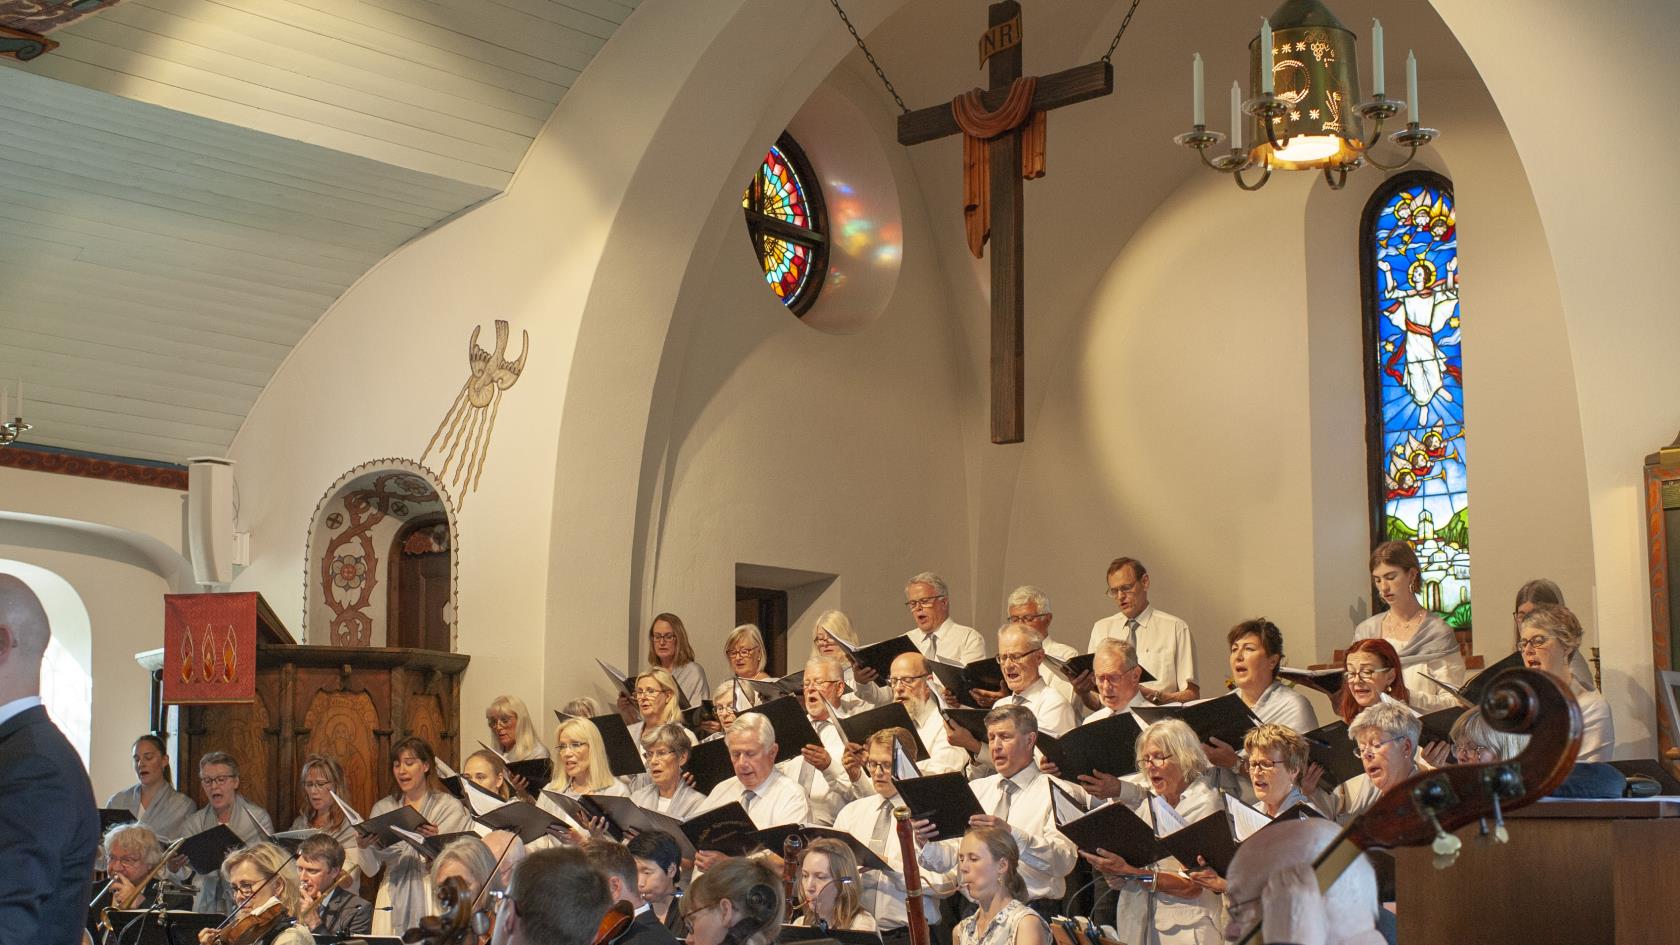 Enskede kammarkör sjunger i Enskede kyrka